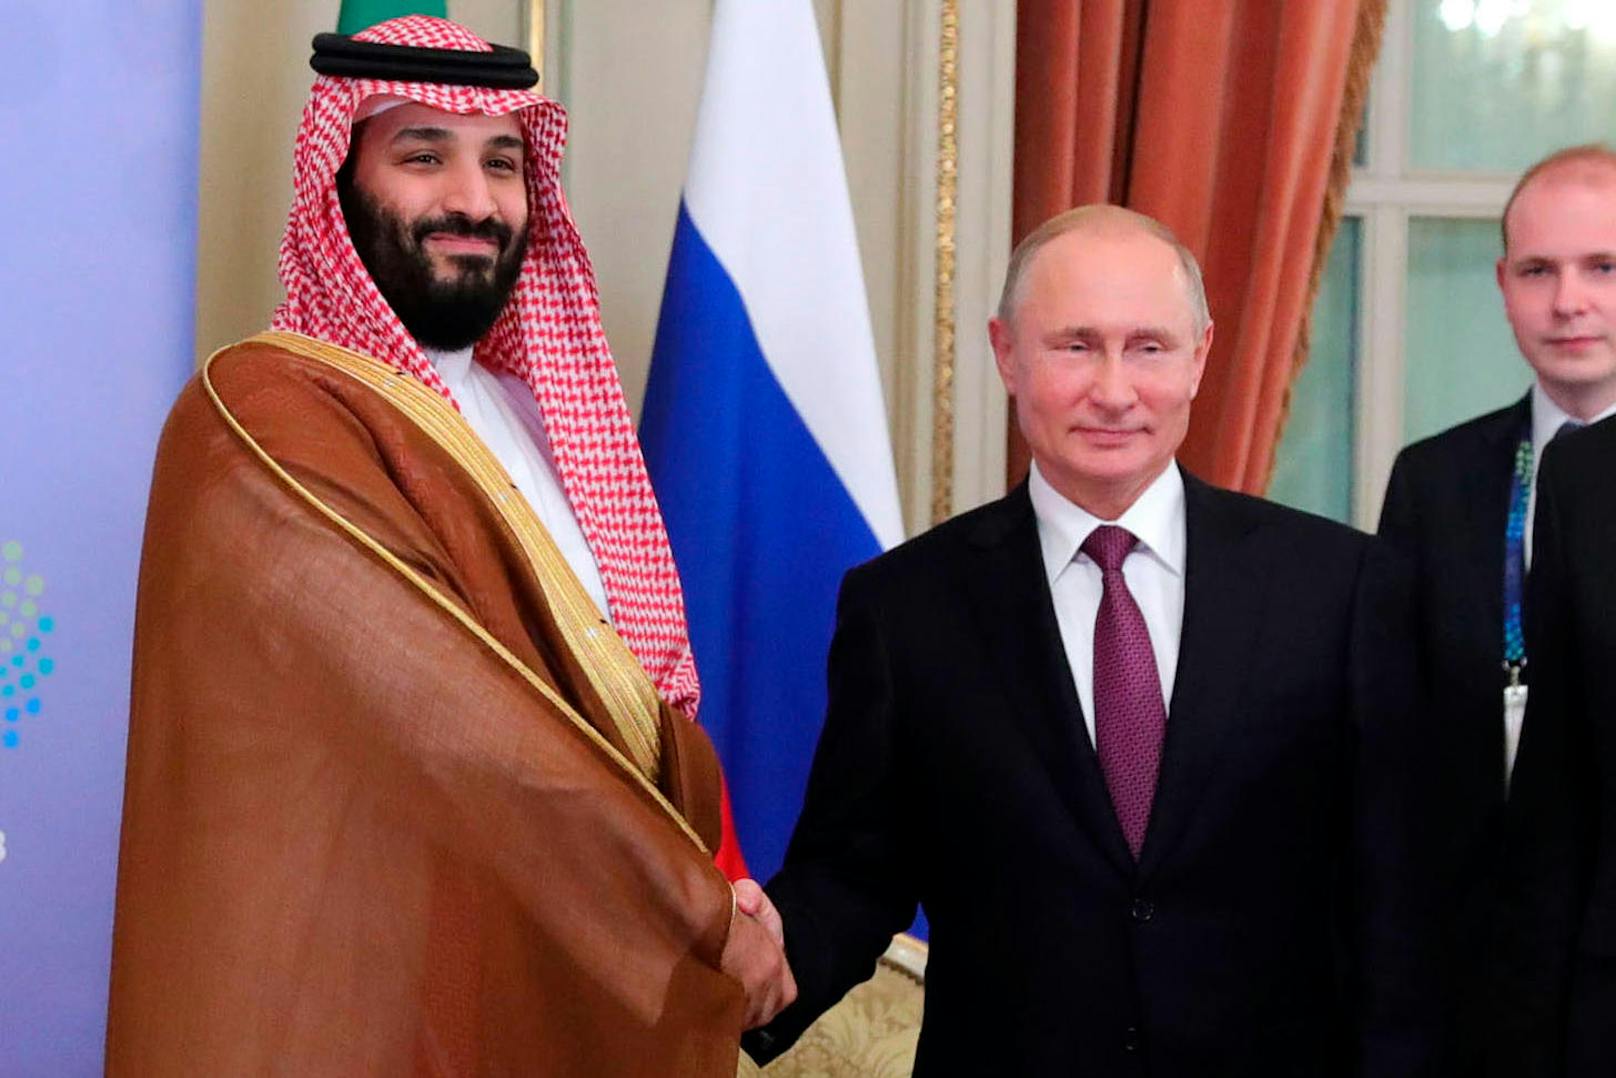 Der wegen des gewaltsamen Tods des Journalisten Jamal Khashoggi in der Kritik stehende saudische Thronfolger Bin Salman wurde am Gipfel mehrheitlich freundlich in Empfang genommen. <a href="https://www.heute.at/welt/news/story/Salman-und-Putin--Trotz-Mordkomplott-Mordsspa--58237465" target="_blank">Auch der russische Präsident Wladimir Putin hatte mit ihm trotz der Anschuldigungen einen Mordsspaß.</a>